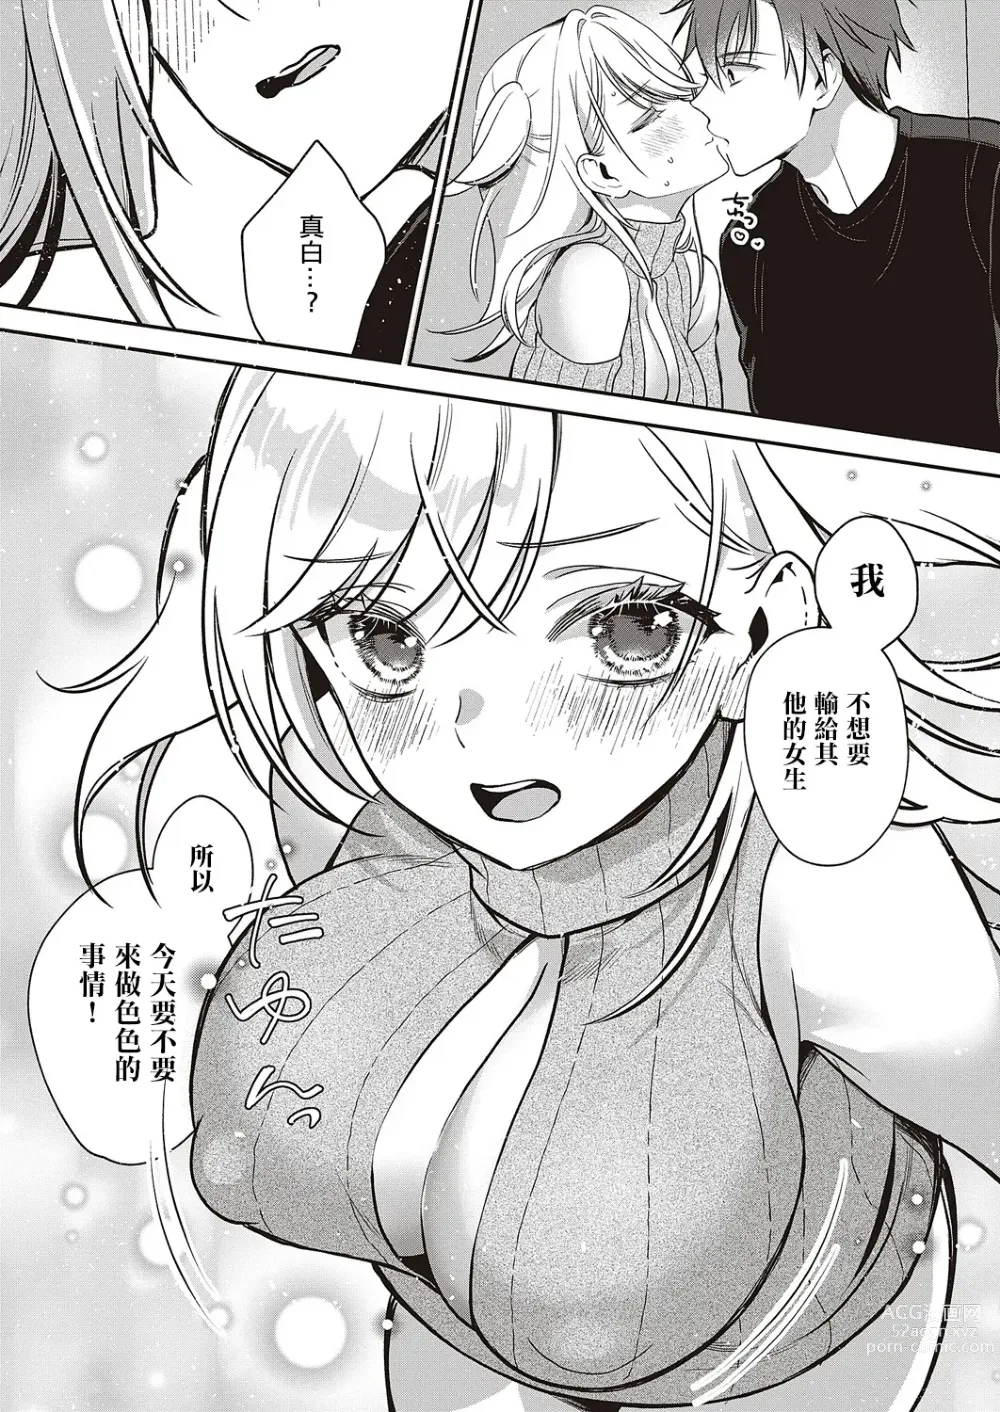 Page 11 of manga Ganbaru Kanojo wa Okirai desu ka?